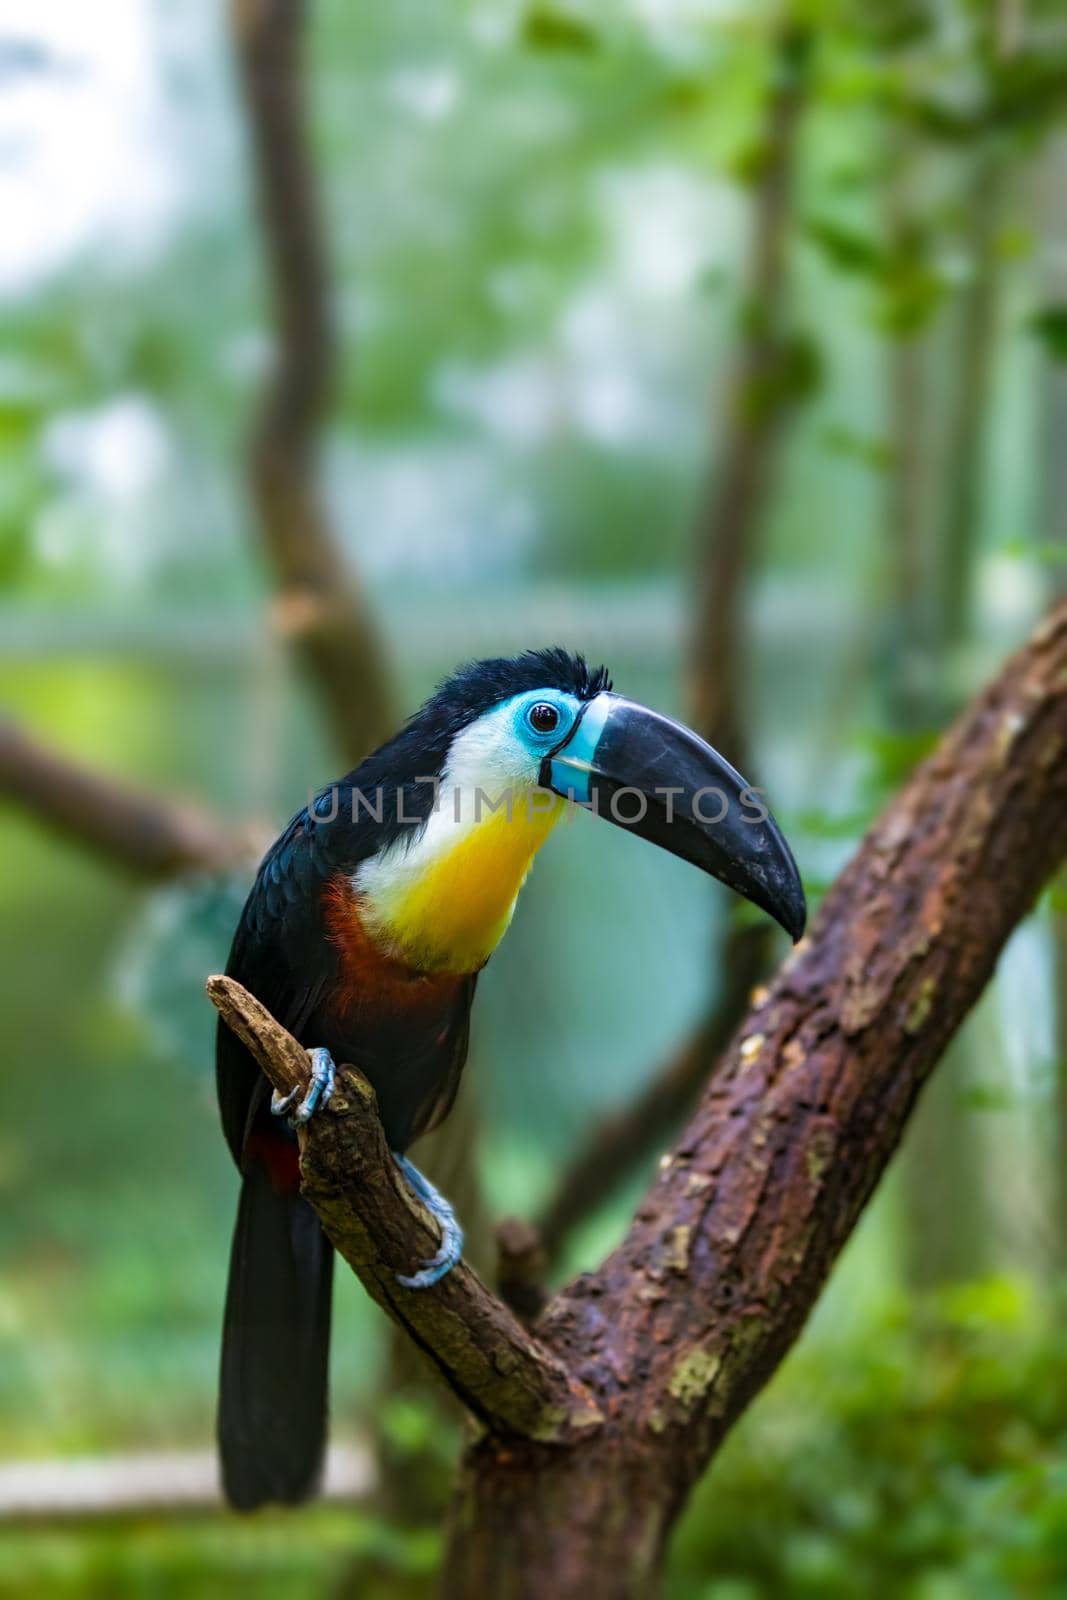 bird hannel-billed toucan, Ramphastos vitellinus by artush